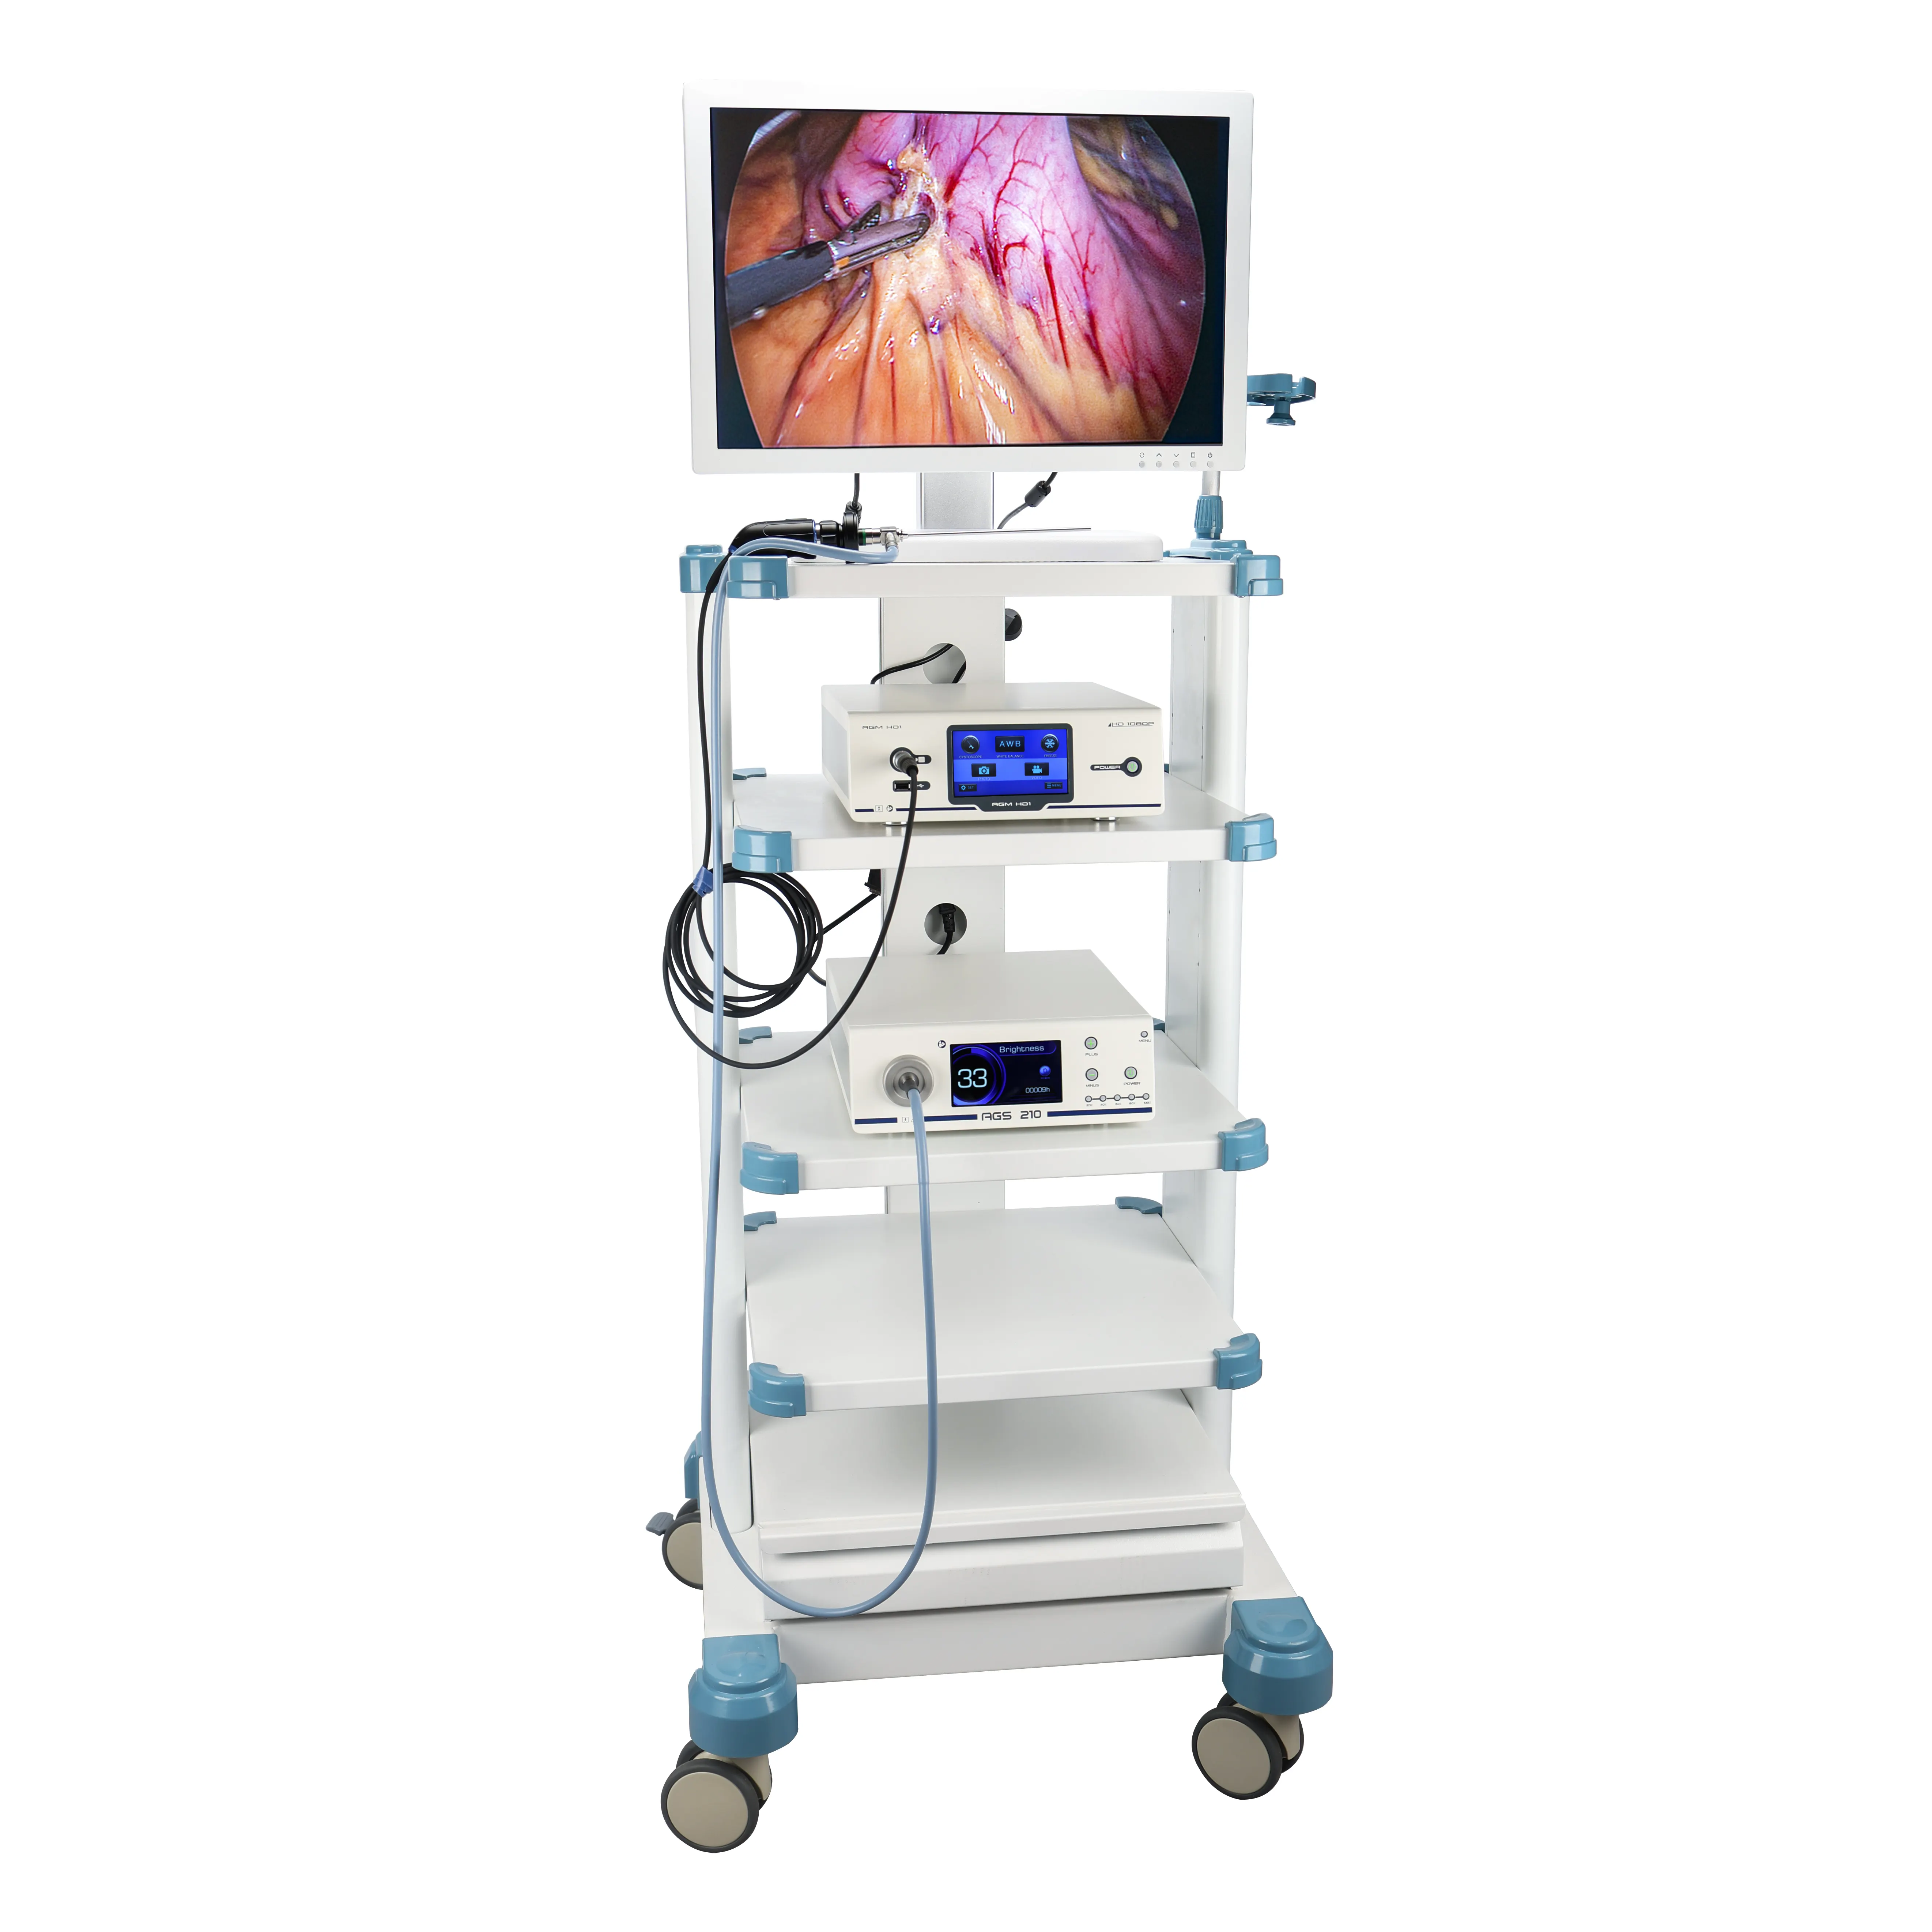 Fabrika fiyat tam HD laparoskopi kulesi Laparoscopic aletleri ve cihazlar ile komple Set, endoskop kamera sistemi